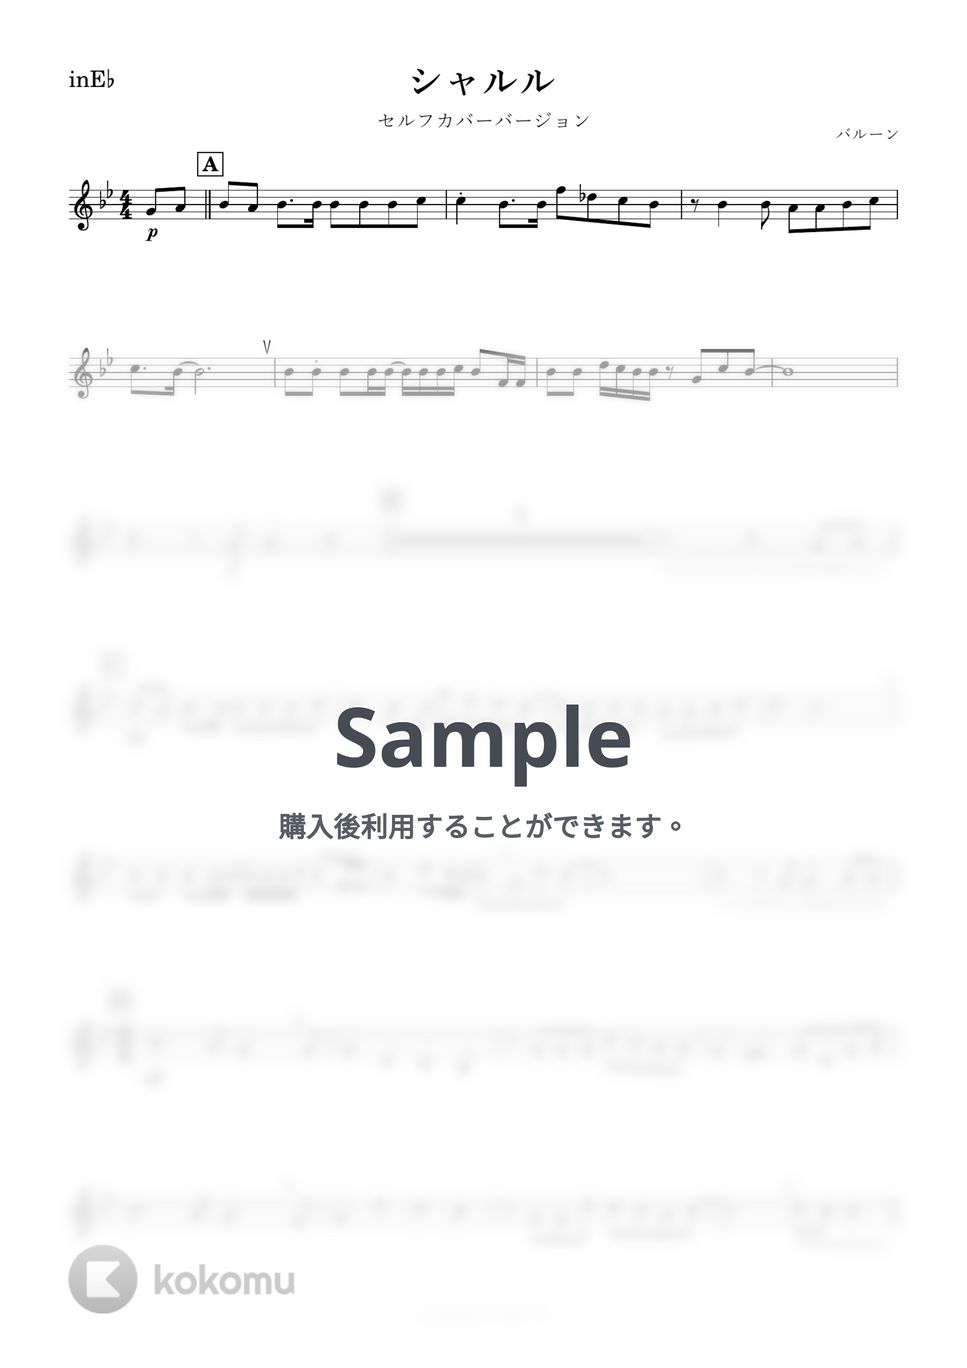 バルーン - シャルル (E♭) by kanamusic